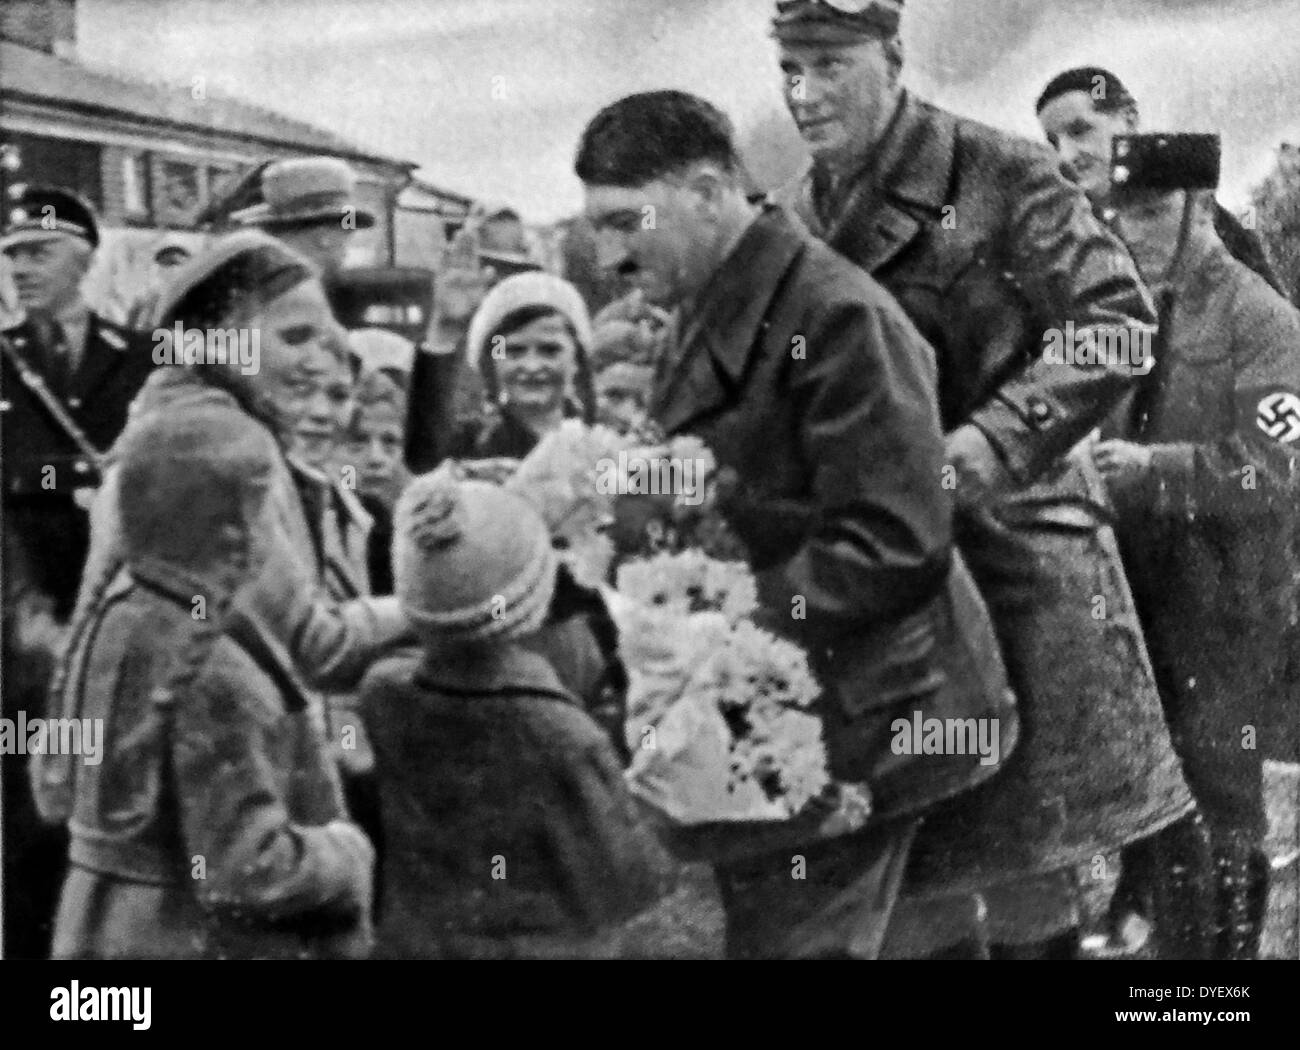 Hitler mit bewundernden Fans. Diese Fotos wurden genommen, der Vater der Nation Status von Adolf Hitler zu erhöhen, nachdem er Bundeskanzler der Bundesrepublik Deutschland wurde im Jahre 1933. Rudolf Hess der Stellvertretende Fuhrer auf der rechten Seite angezeigt wird. Stockfoto